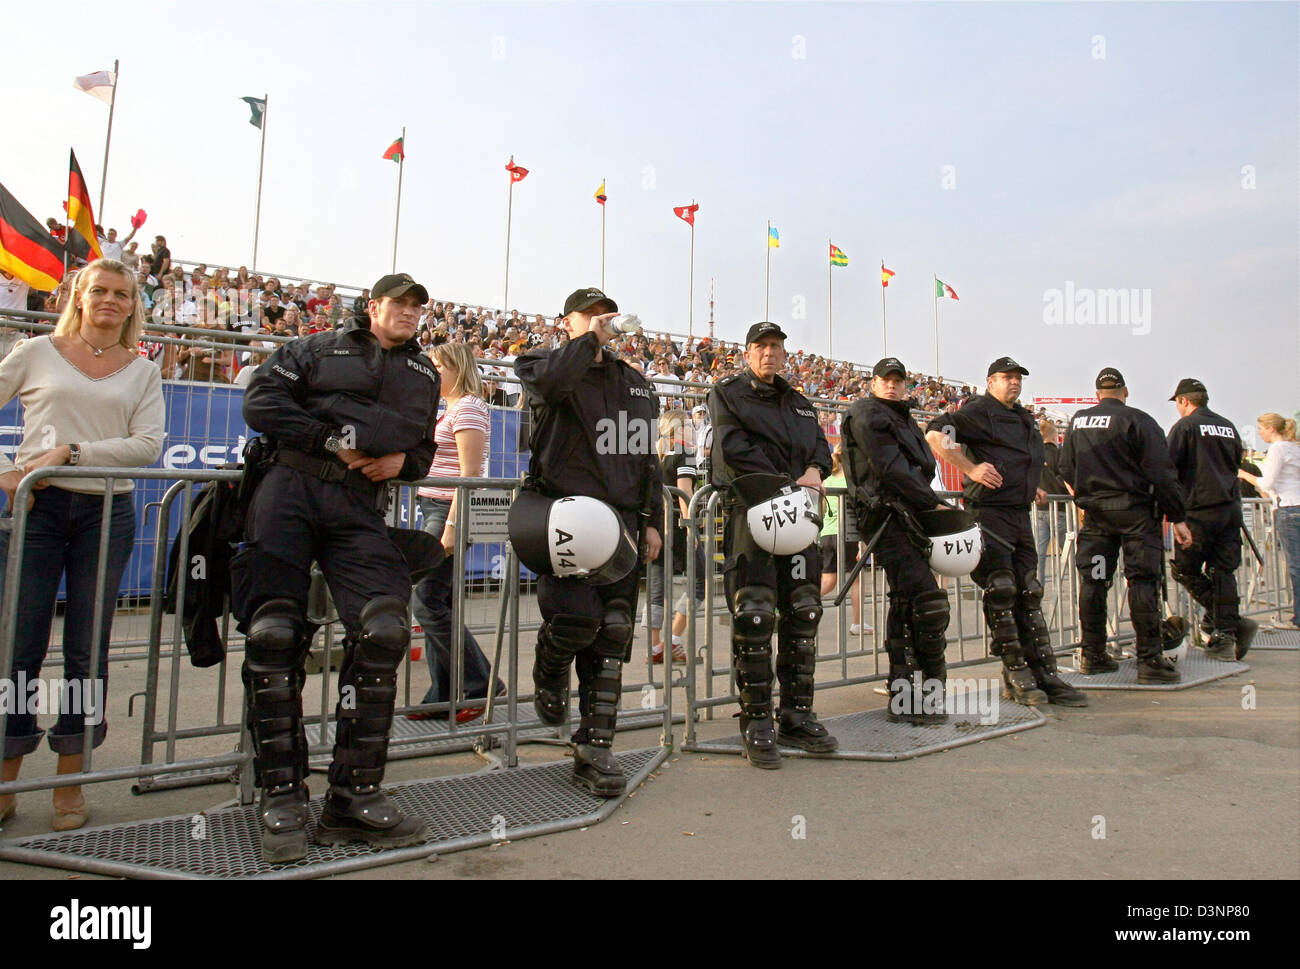 La Polizia antisommossa fissano il sostenitore festival prima della Coppa del Mondo FIFA 2006 Gruppo a turno preliminare match tra la Germania e la Polonia ad Amburgo, Germania, Mercoledì, 14 giugno 2006. Foto: Kay Nietfeld Foto Stock